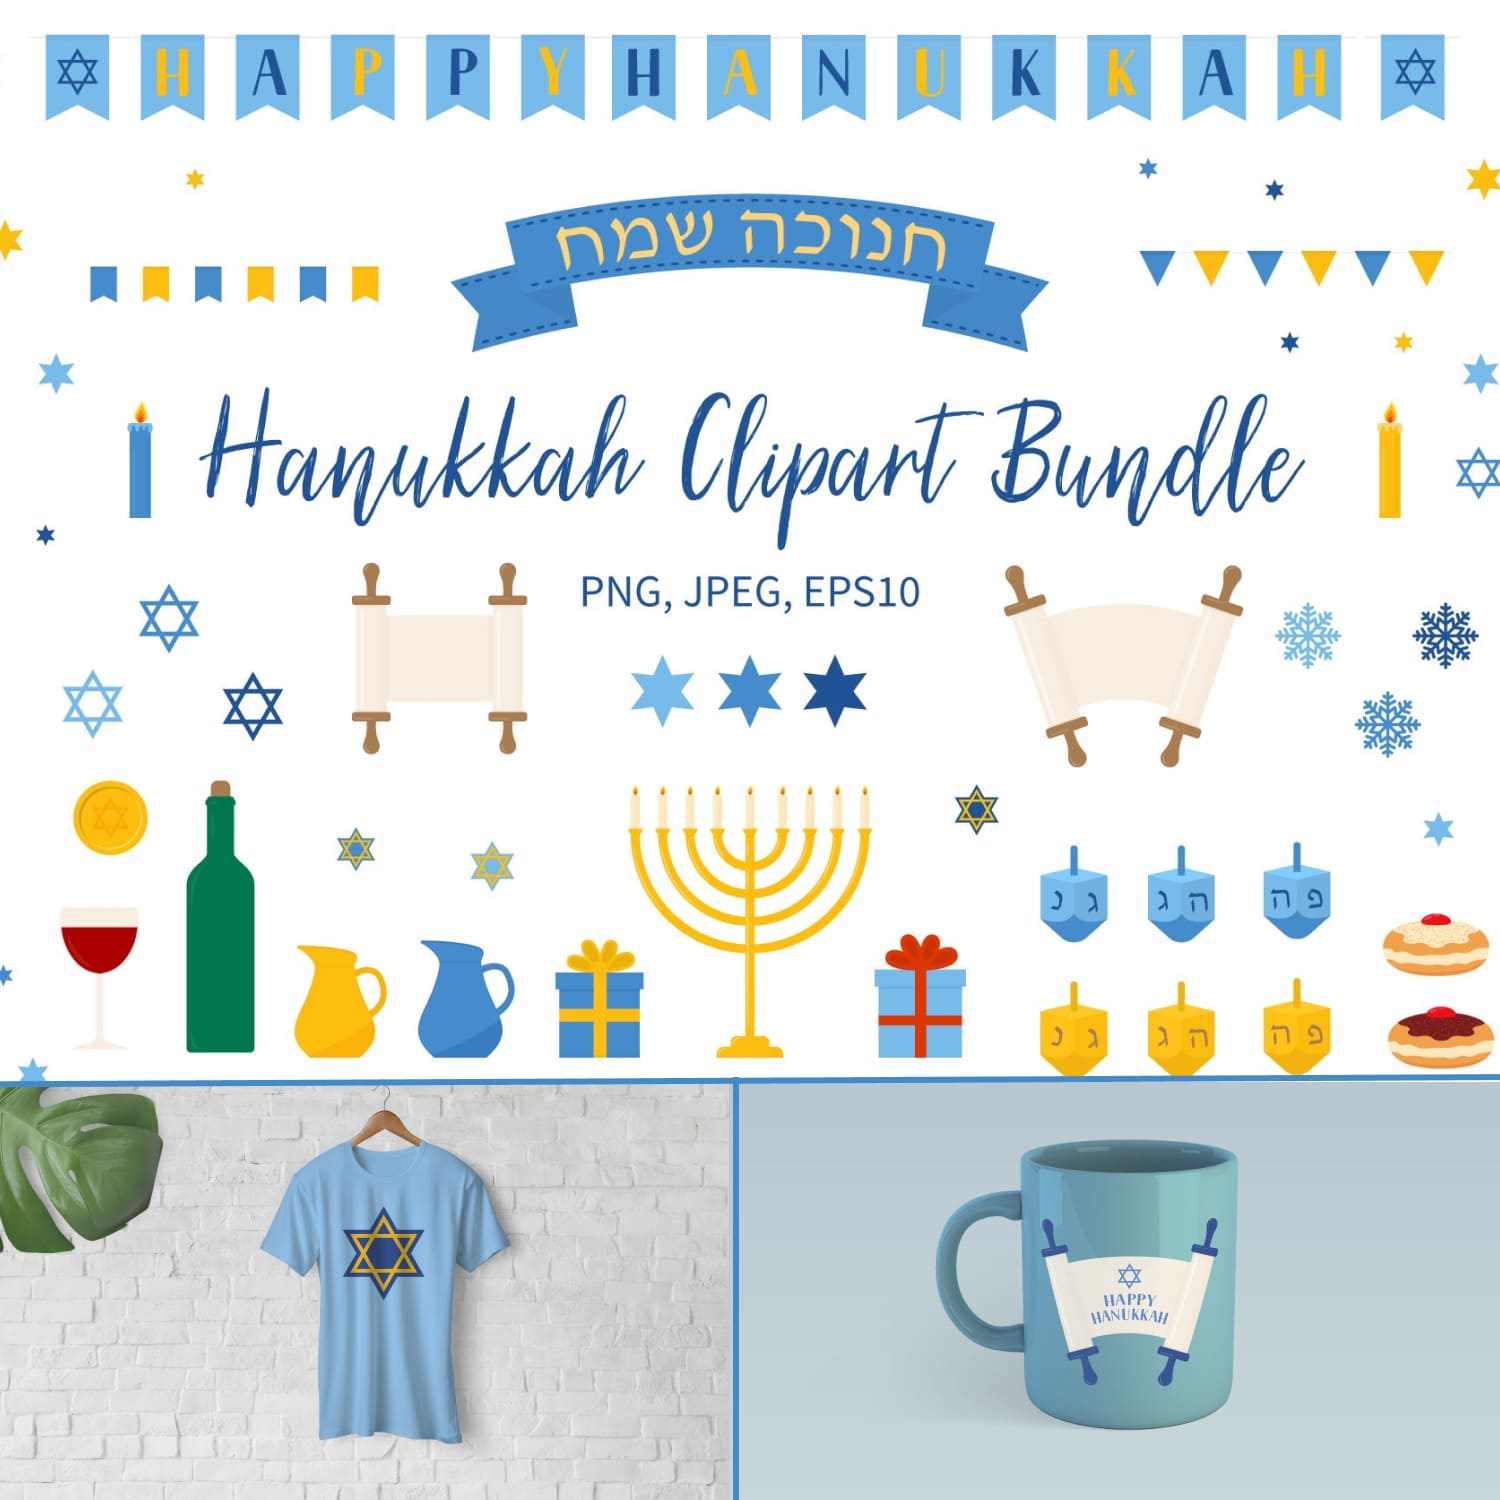 Prints of hanukkah clipart bundle.